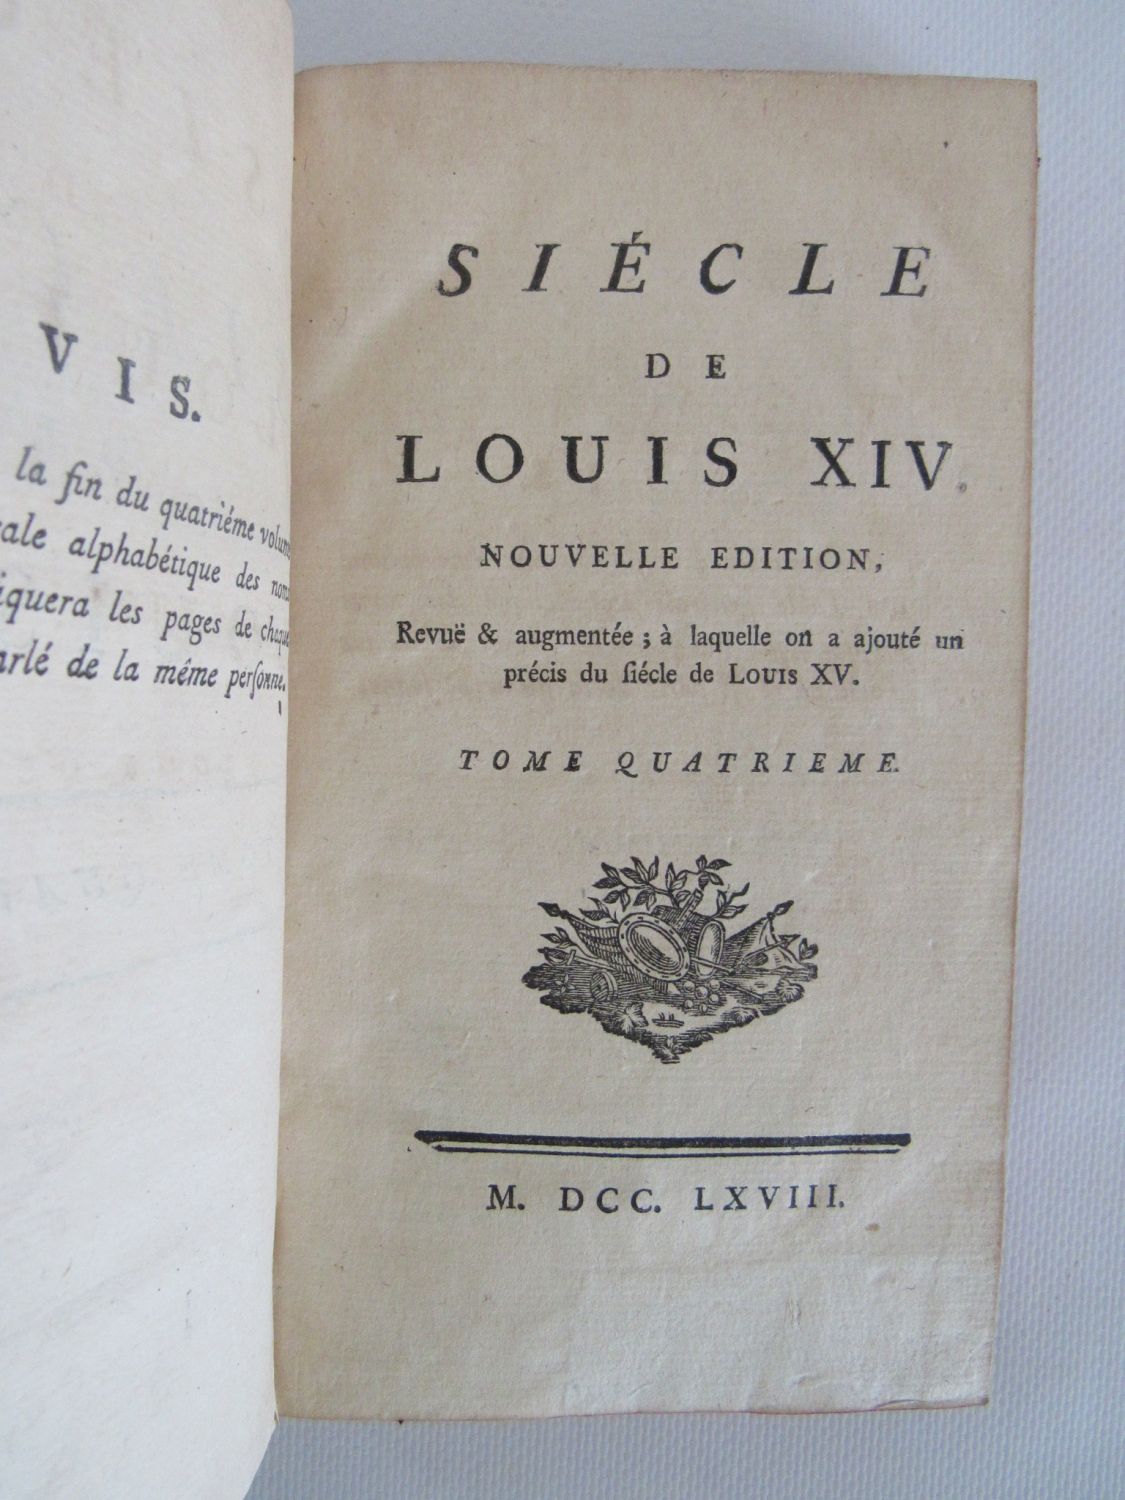 Le Siècle de Louis XIV, Voltaire